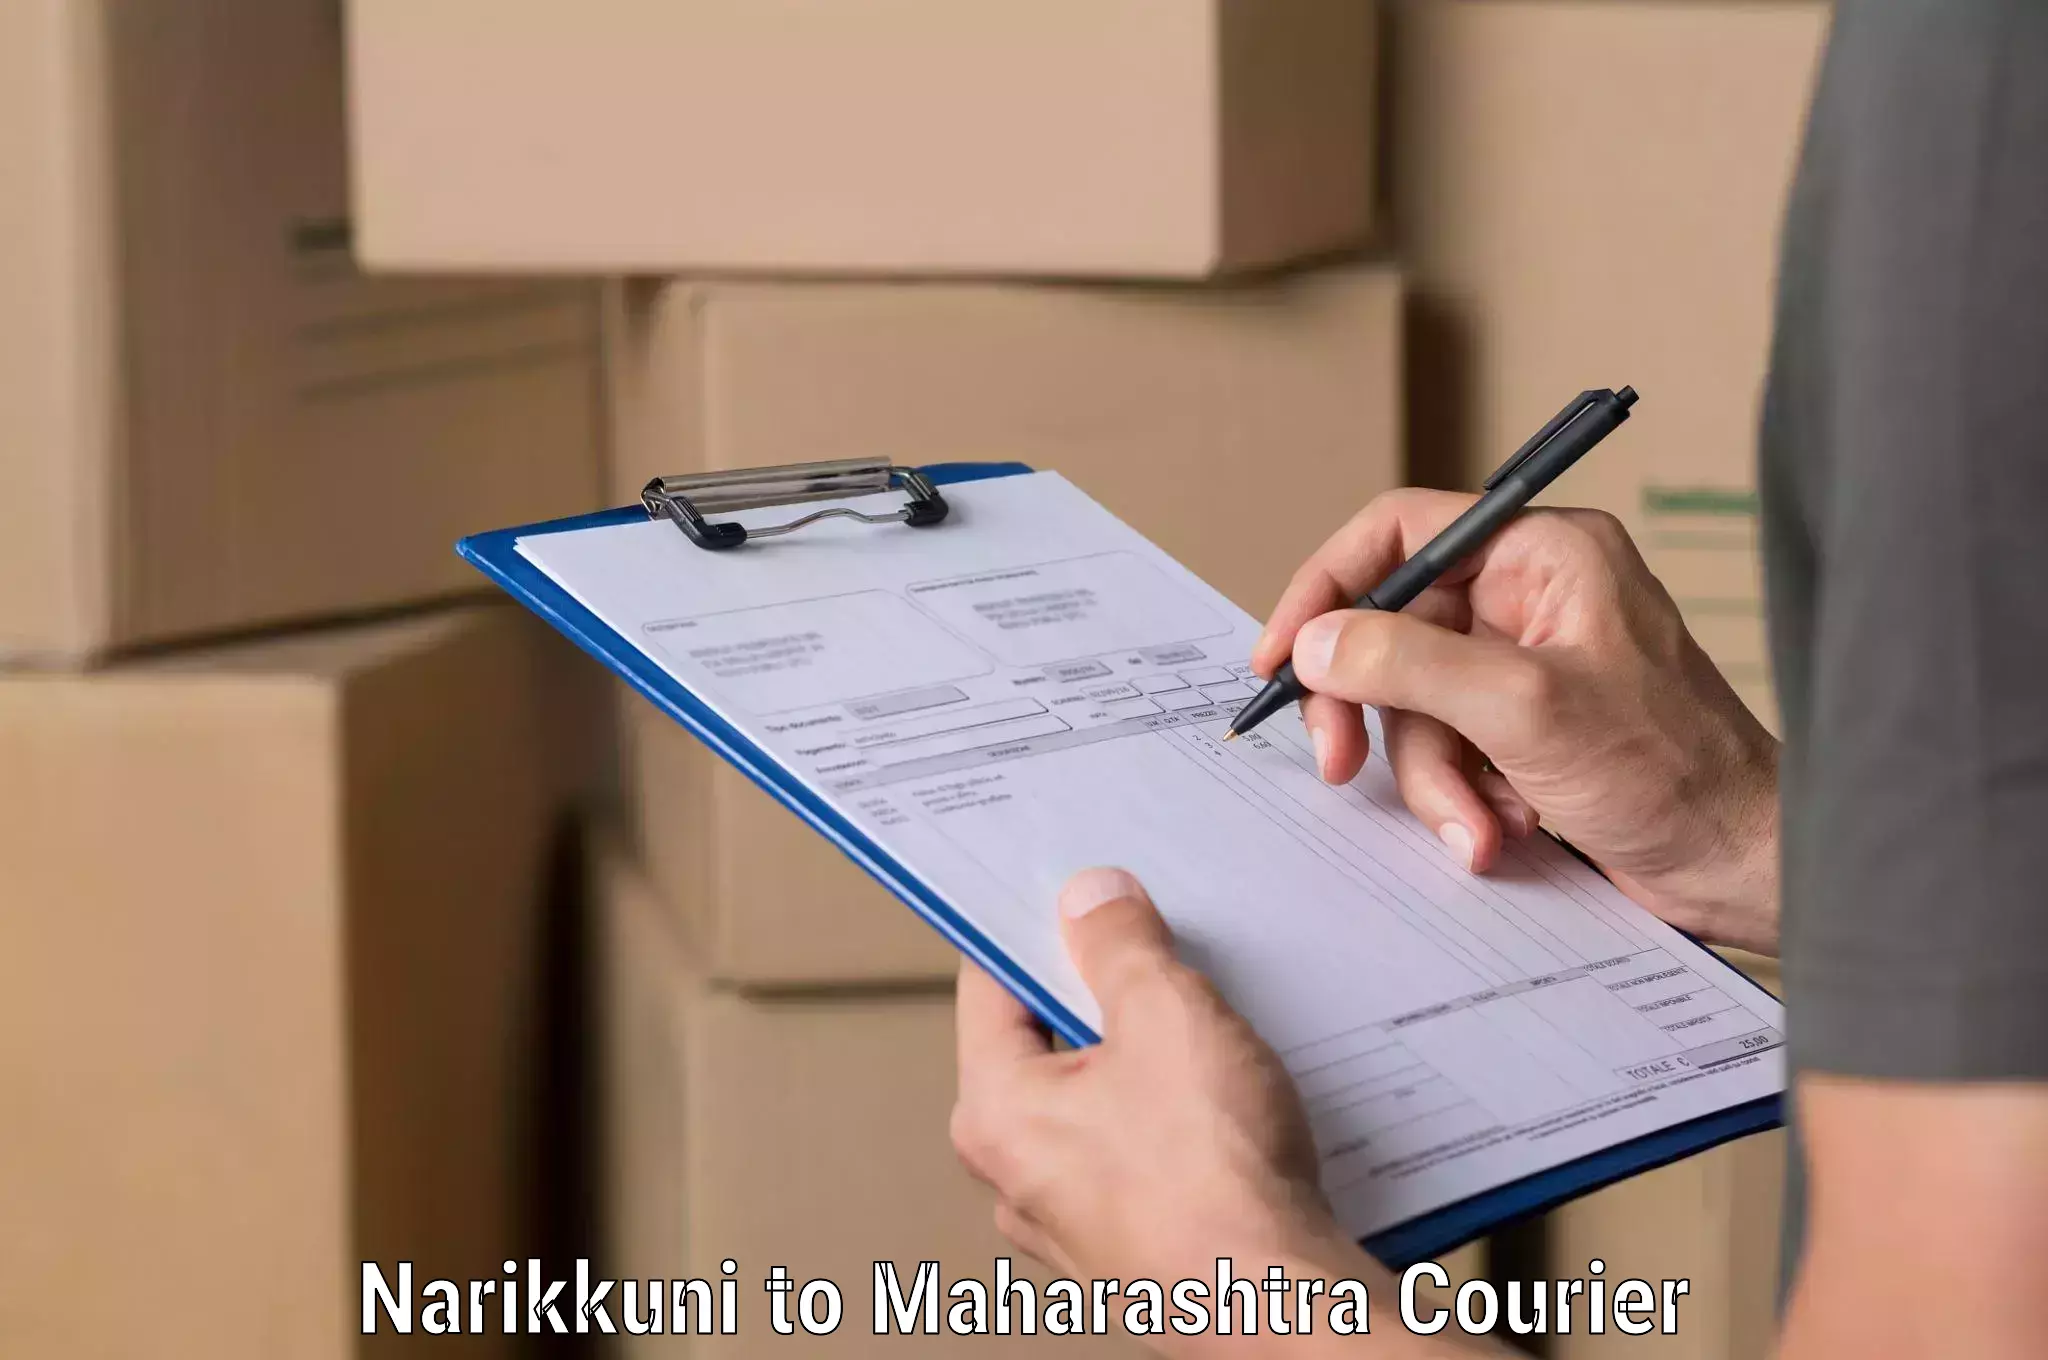 Budget-friendly shipping Narikkuni to Maharashtra